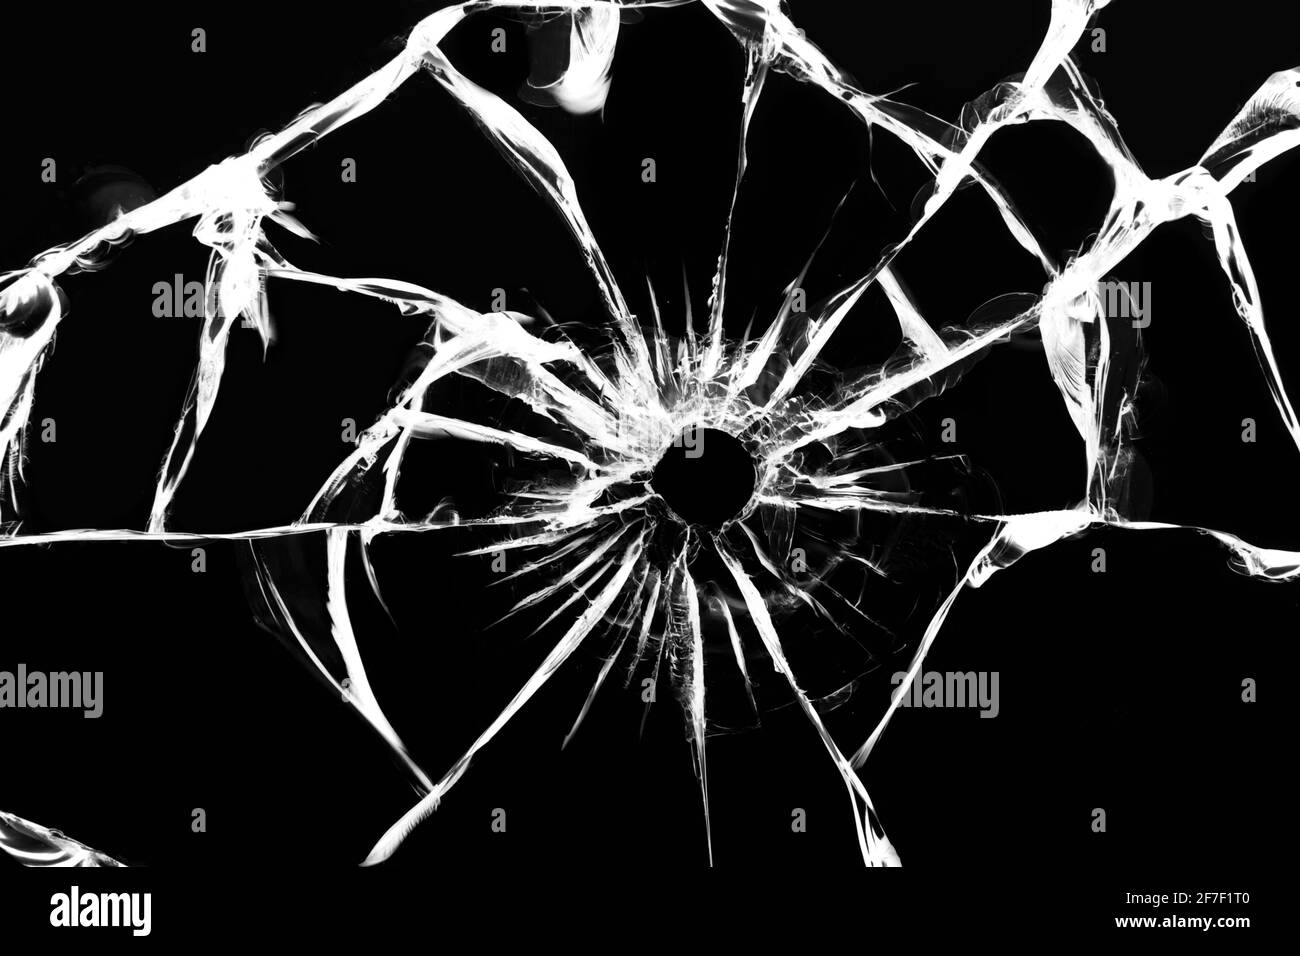 Beschädigtes Glas mit Rissen, Risse im Glas vom Schuss. Kaputtes Fenster,  Textur auf schwarzem Hintergrund Stockfotografie - Alamy